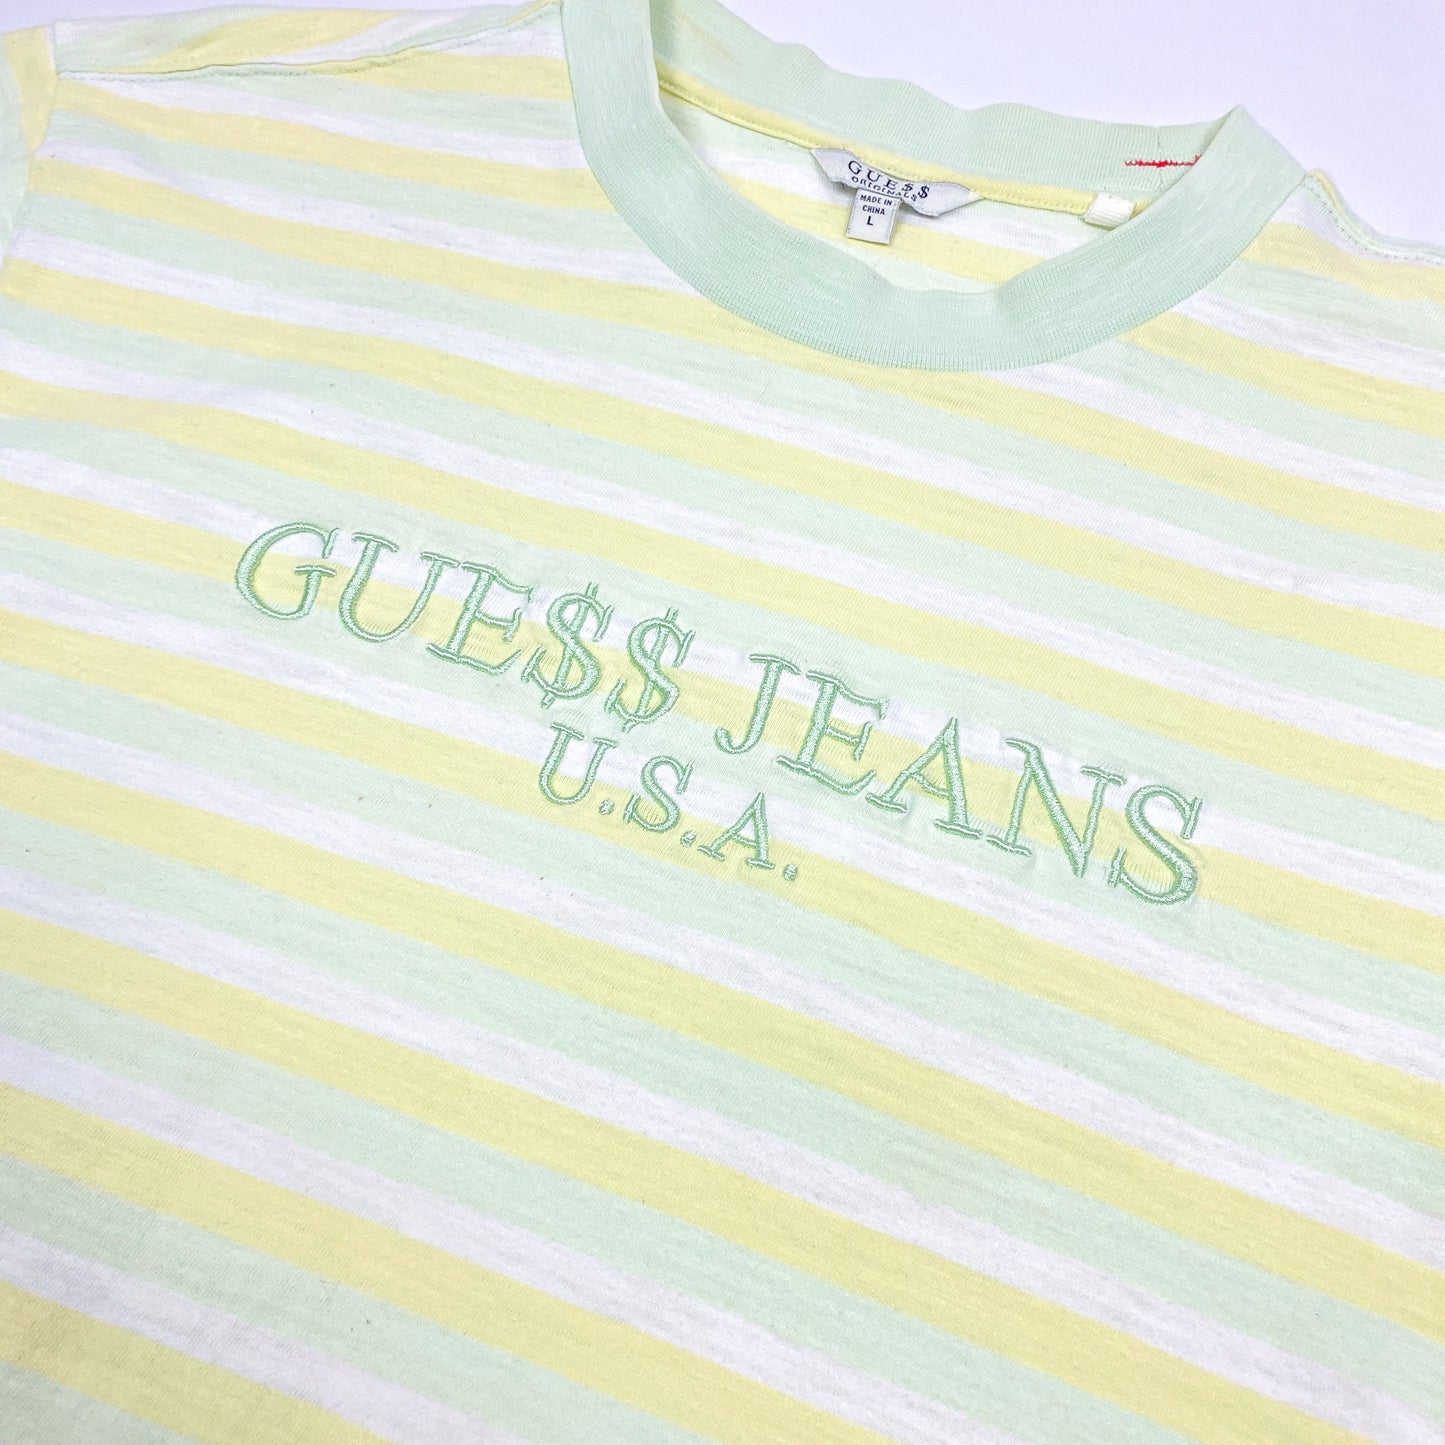 GUESS x A$AP ROCKY Striped T-Shirt